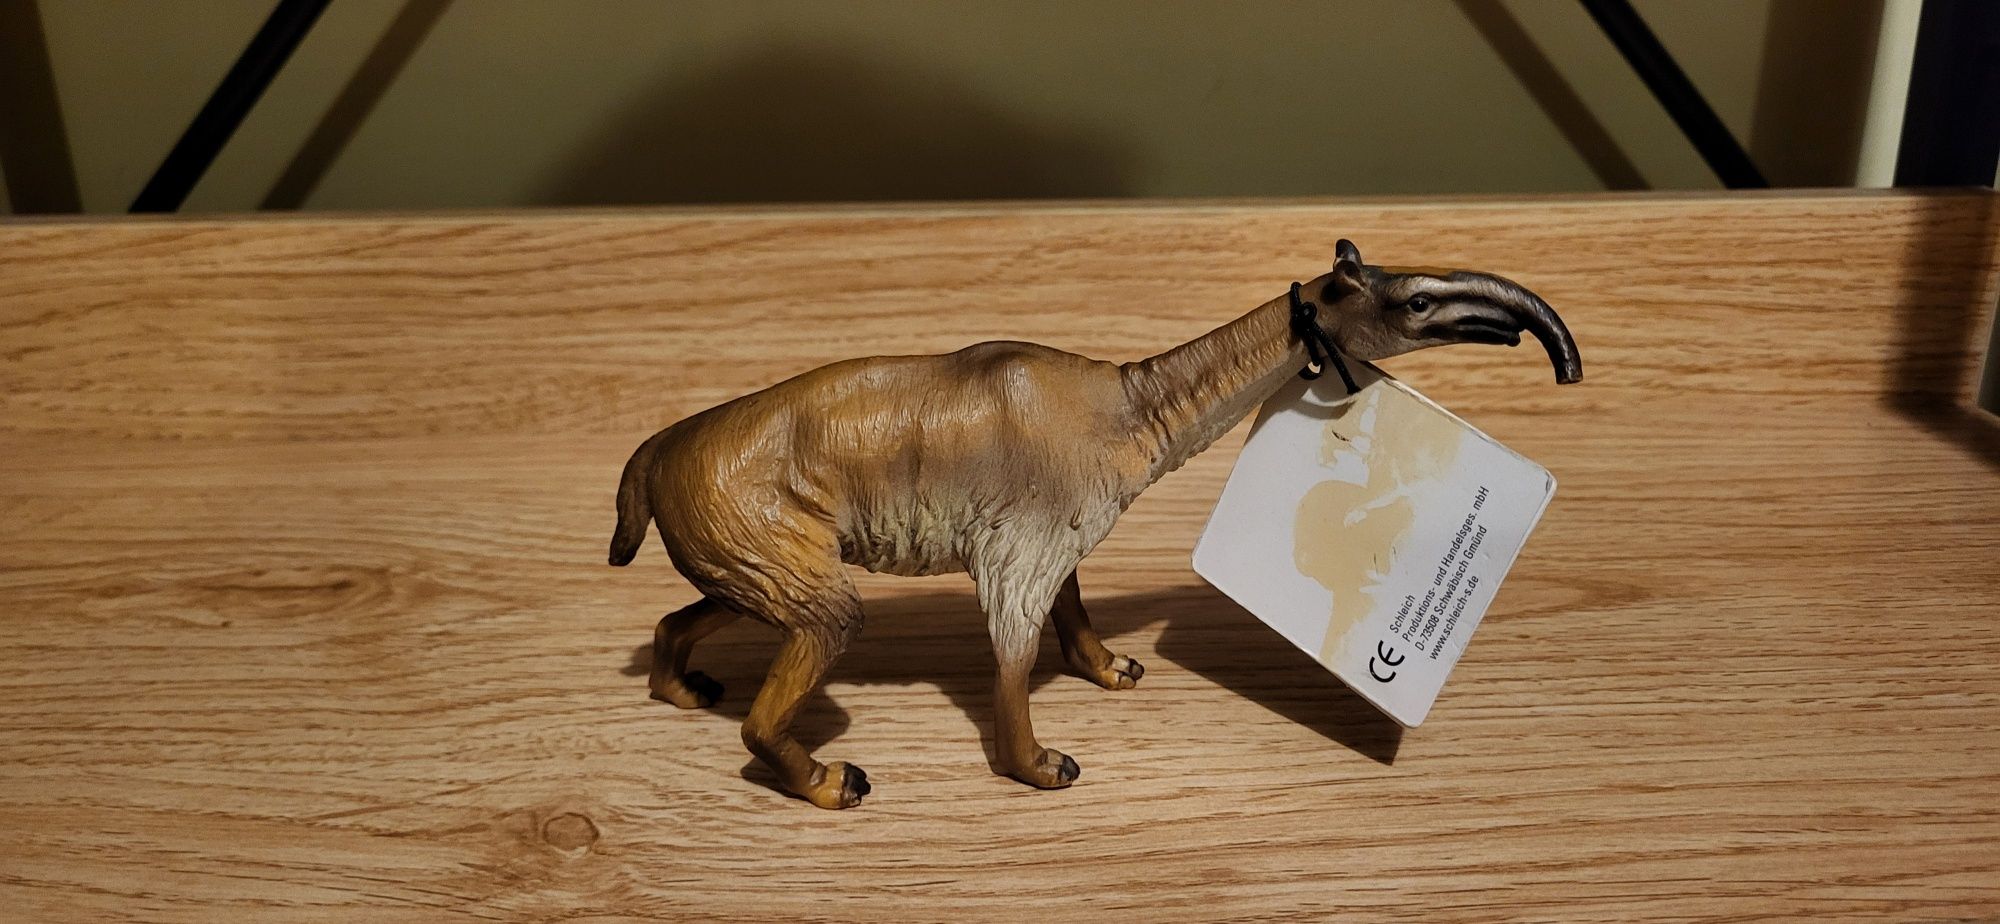 Schleich dinozaur makrauchenia figurka unikat wycofany 2002